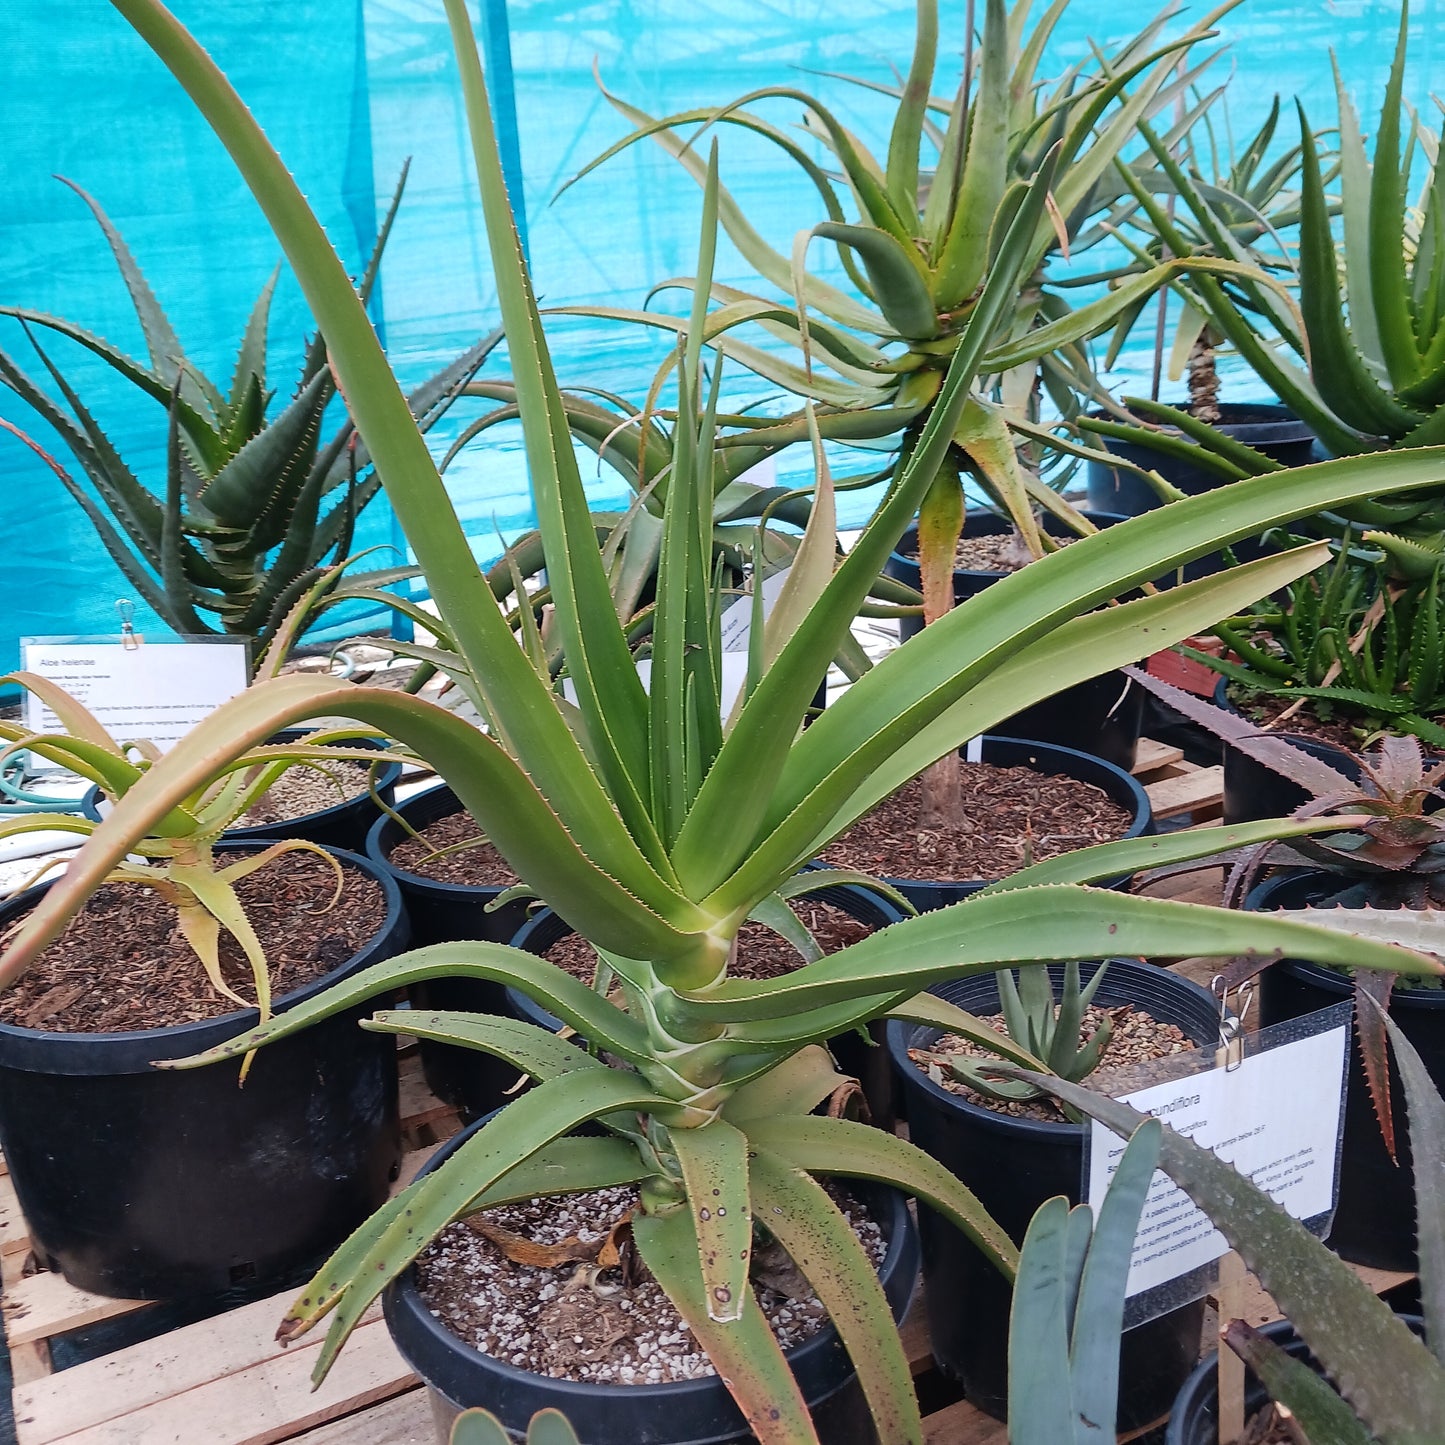 Aloe tongaenesis "Medusa" in 7 gal nursery pot